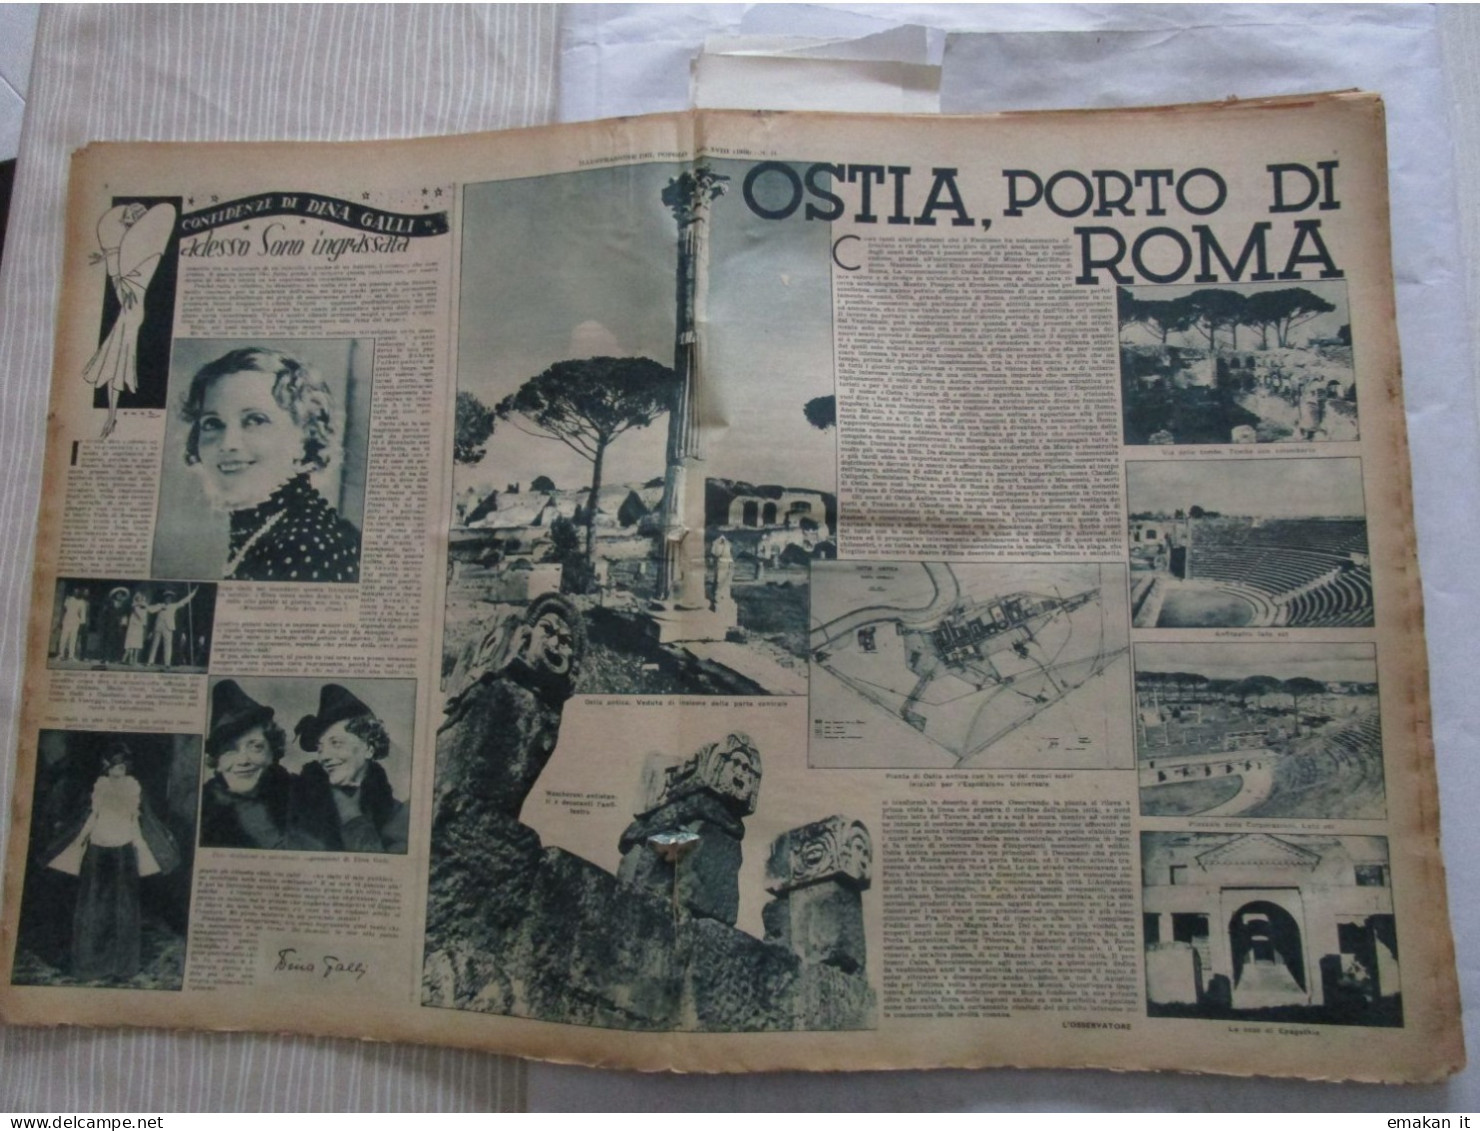 # ILLUSTRAZIONE DEL POPOLO N 14 /1938 GUERRA DI SPAGNA / OSTIA PORTO DI ROMA / ROMA JUVE / LIGURIA INTER - Premières éditions